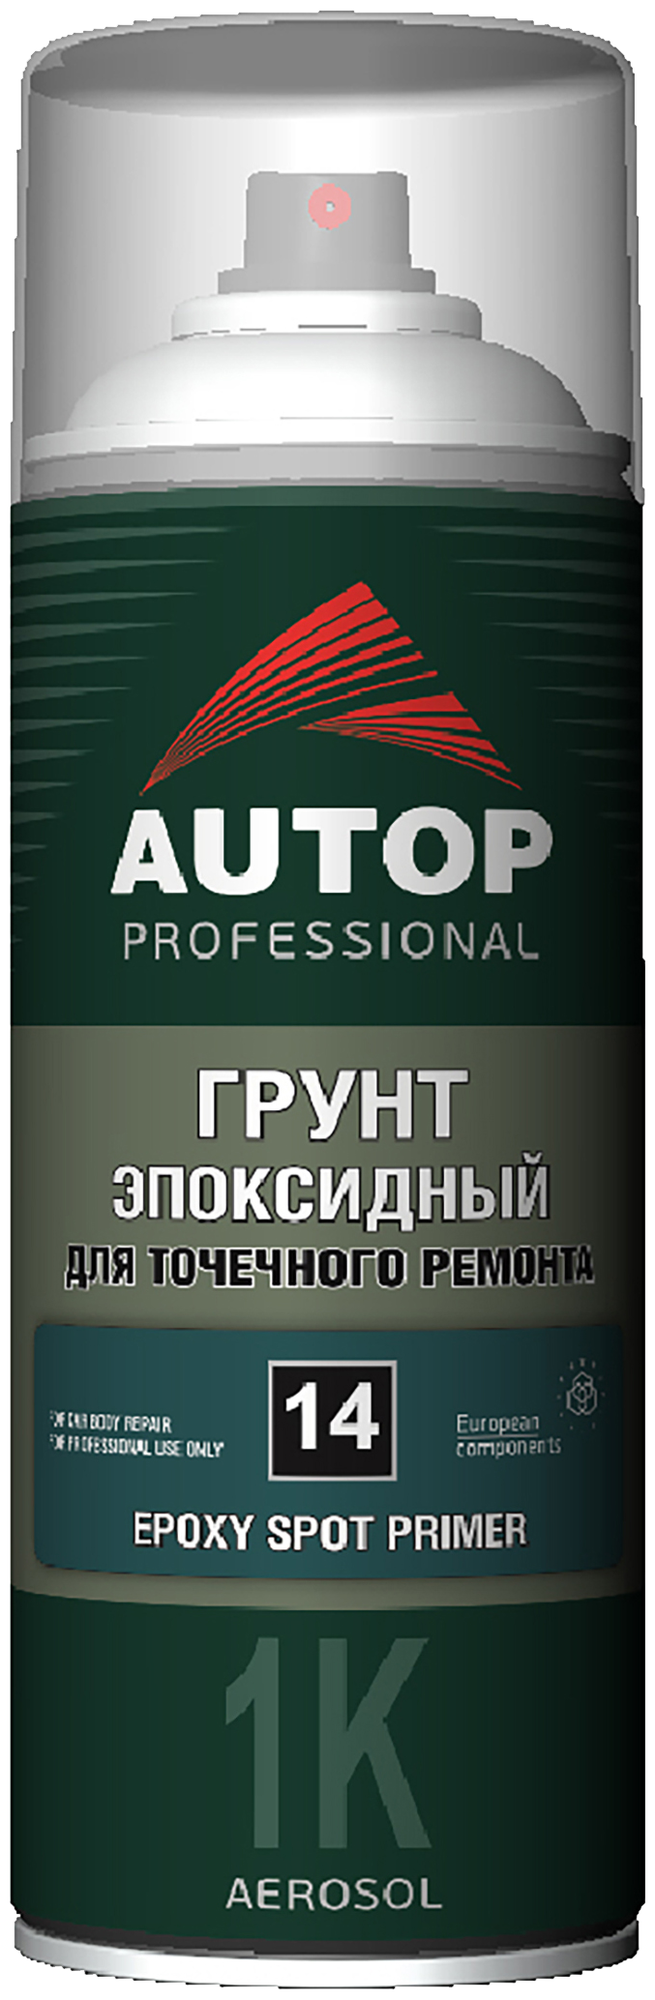 Аэрозольный грунт-праймер Autop 1К Epoxy SPOT Primer